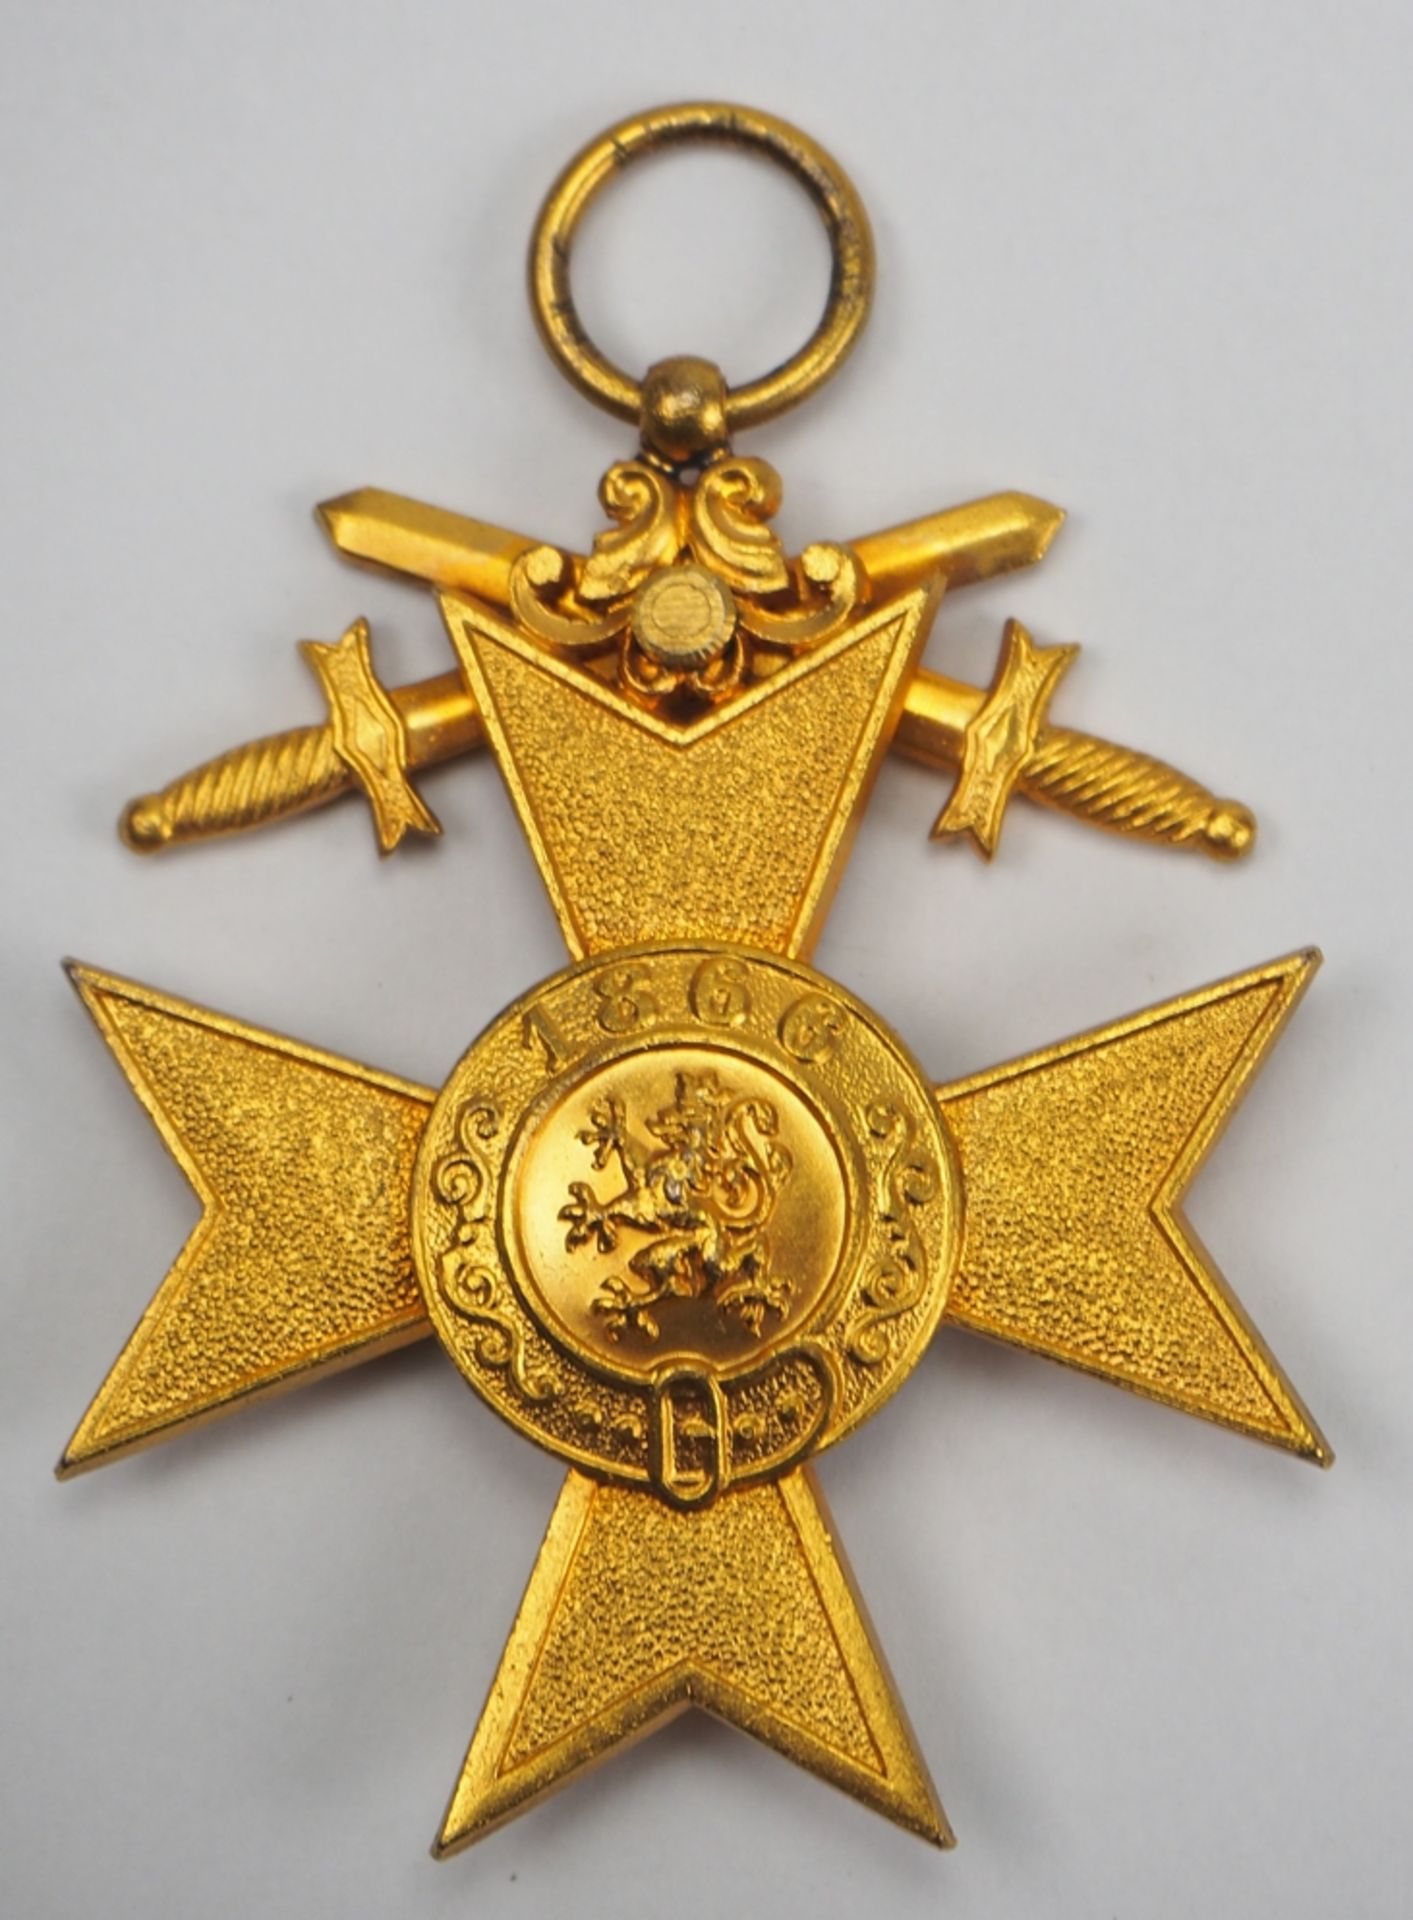 Bayern: Militär-Verdienstkreuz, 1. Klasse mit Schwertern. - Bild 2 aus 2